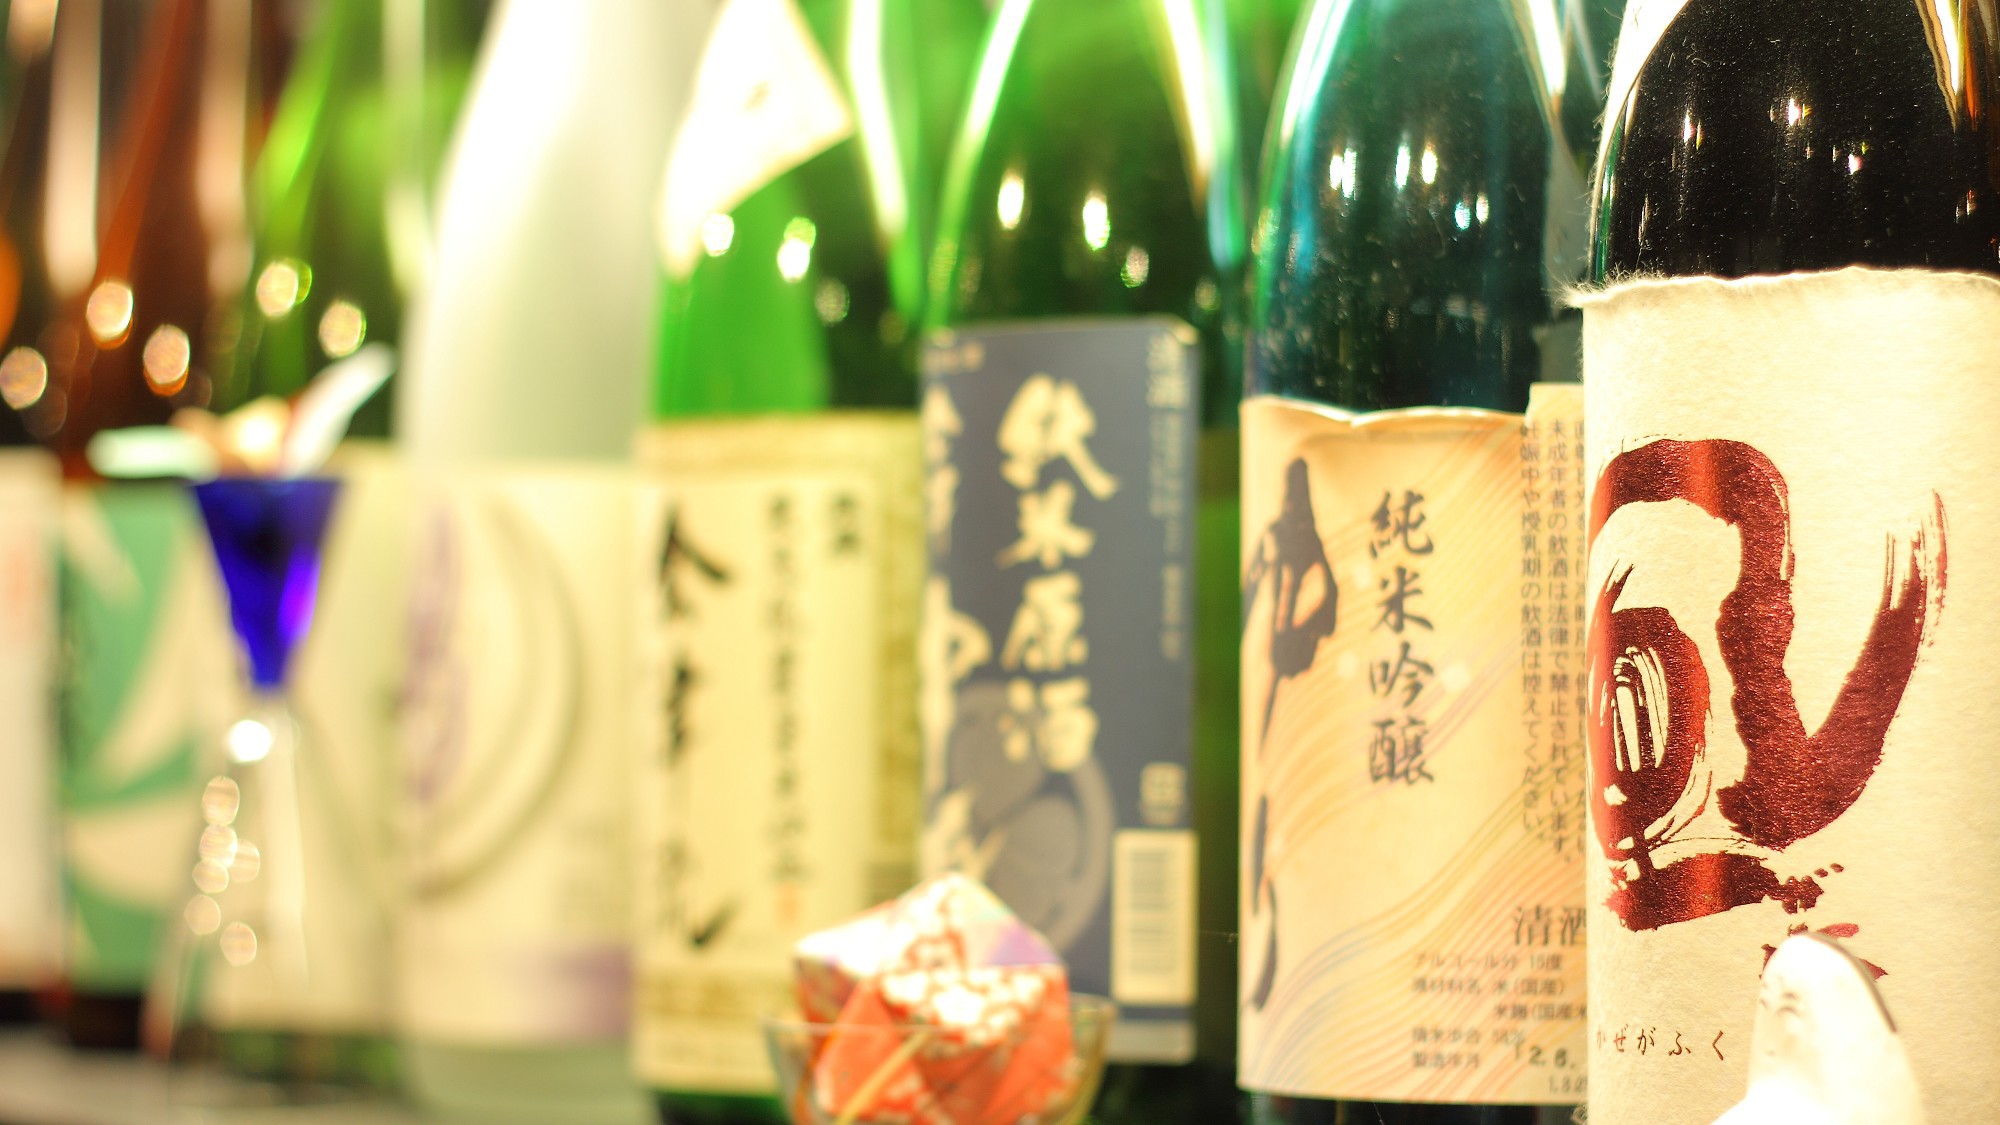 ＊日本酒の品揃えが自慢の宿です。常時30種類以上を揃えております。迷われたらぜひお声かけください♪